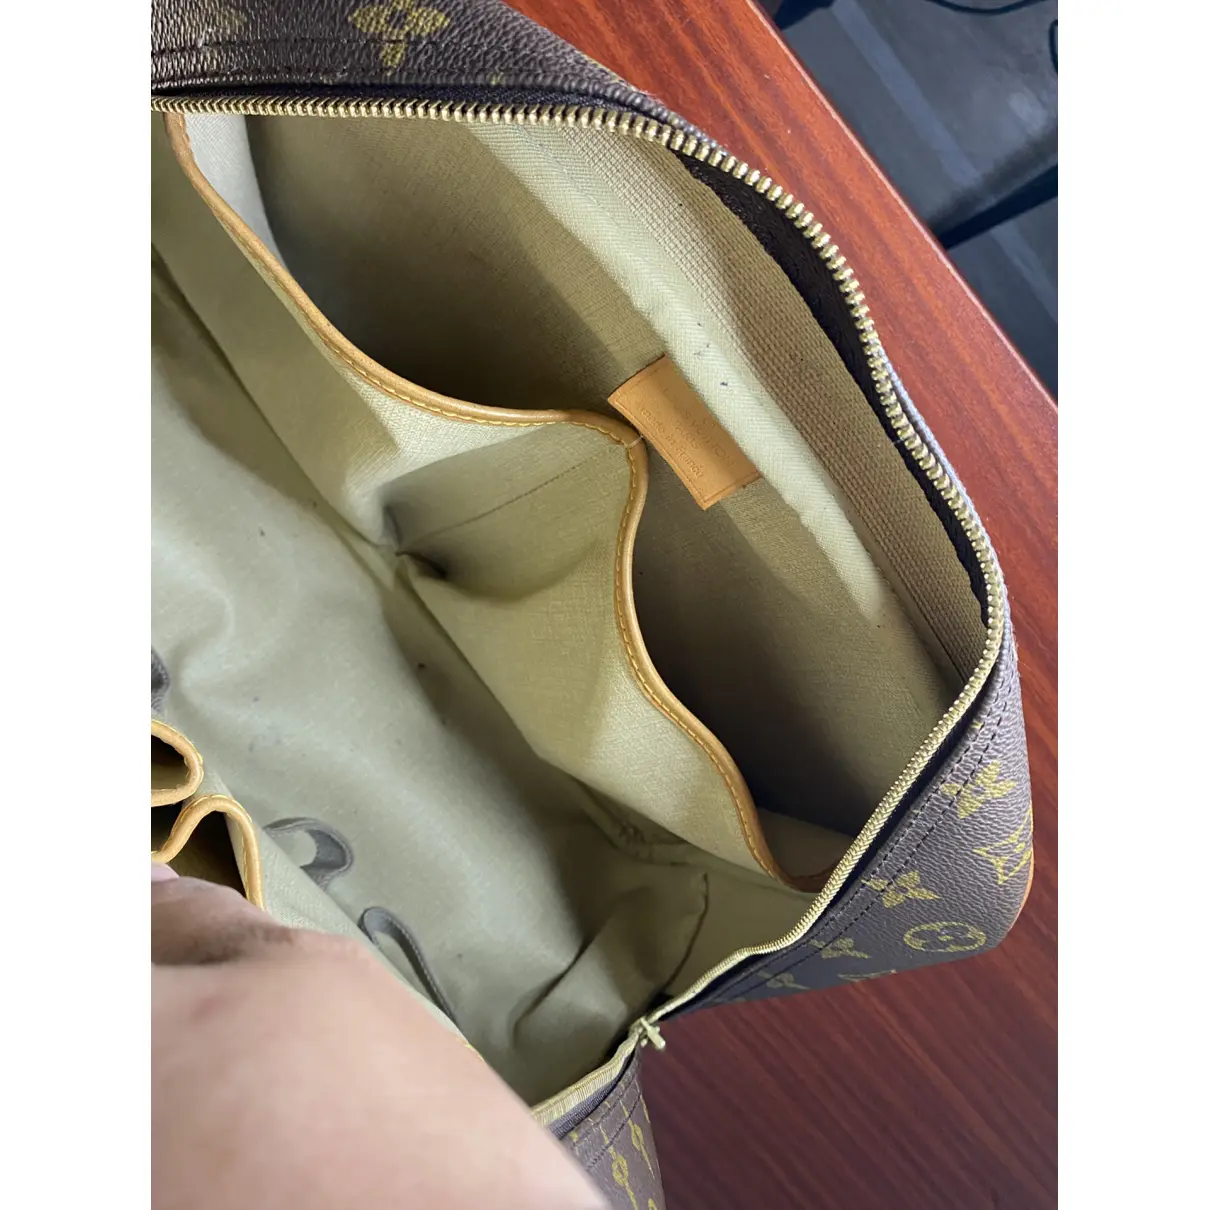 Deauville patent leather bag Louis Vuitton